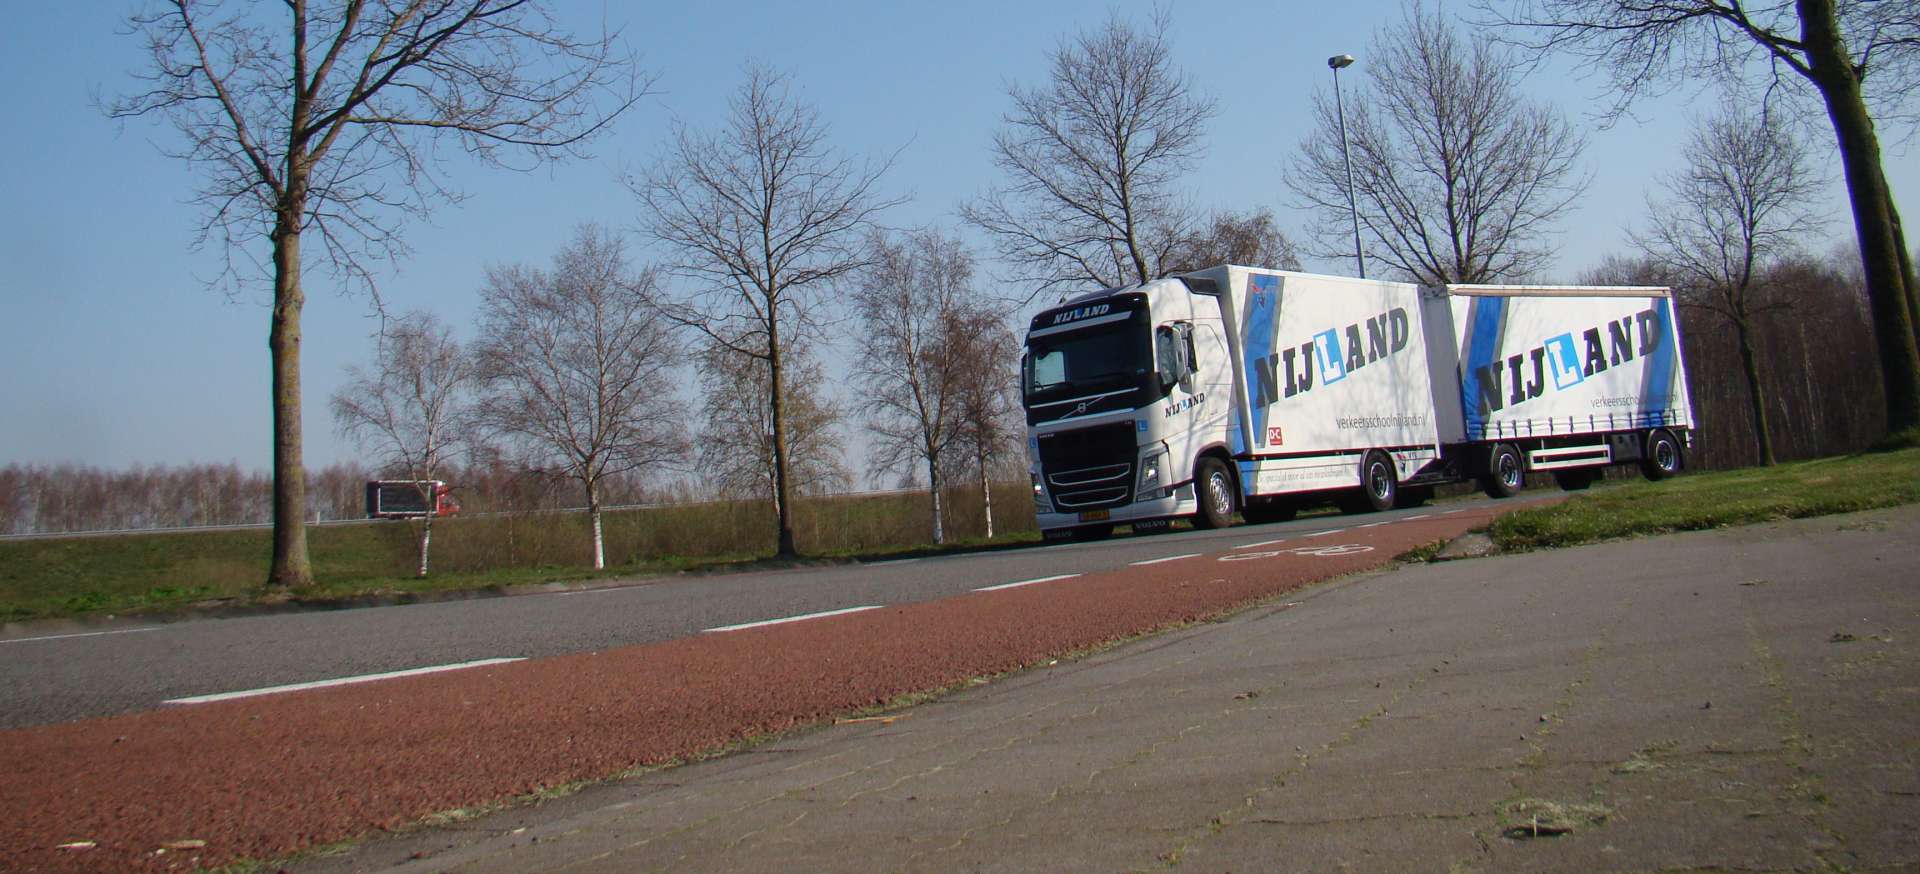 Nijland verkeersschool - rijles voor de gemeente Emmen - Volvo met 2 schamelaanhanger